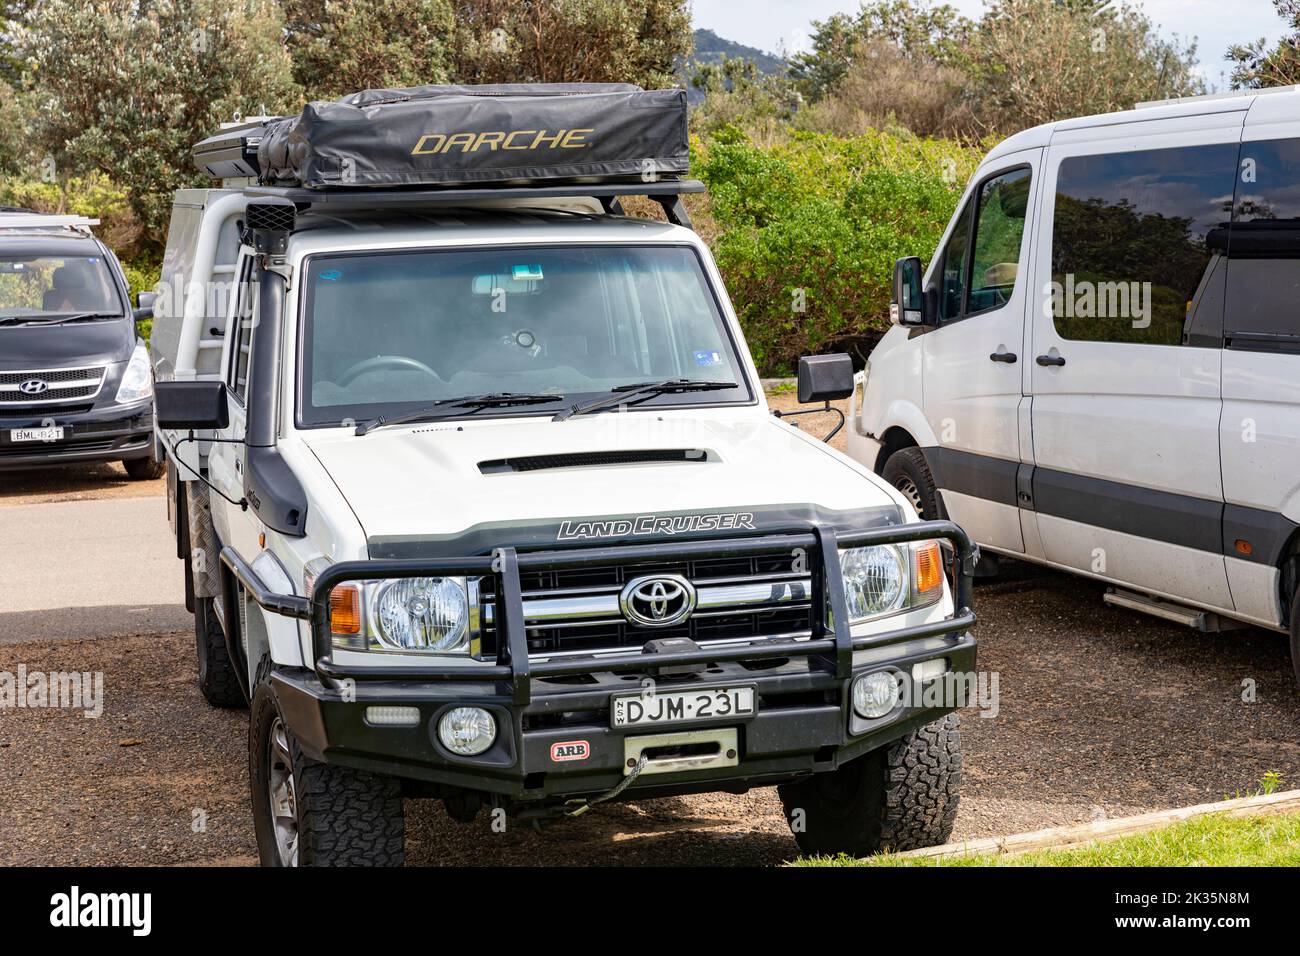 2016 Versión de sobremesa Toyota Landcruiser blanca con techo trasero instalado y carpa superior Darche, preparada para sobrecarga de turismo, Australia Foto de stock